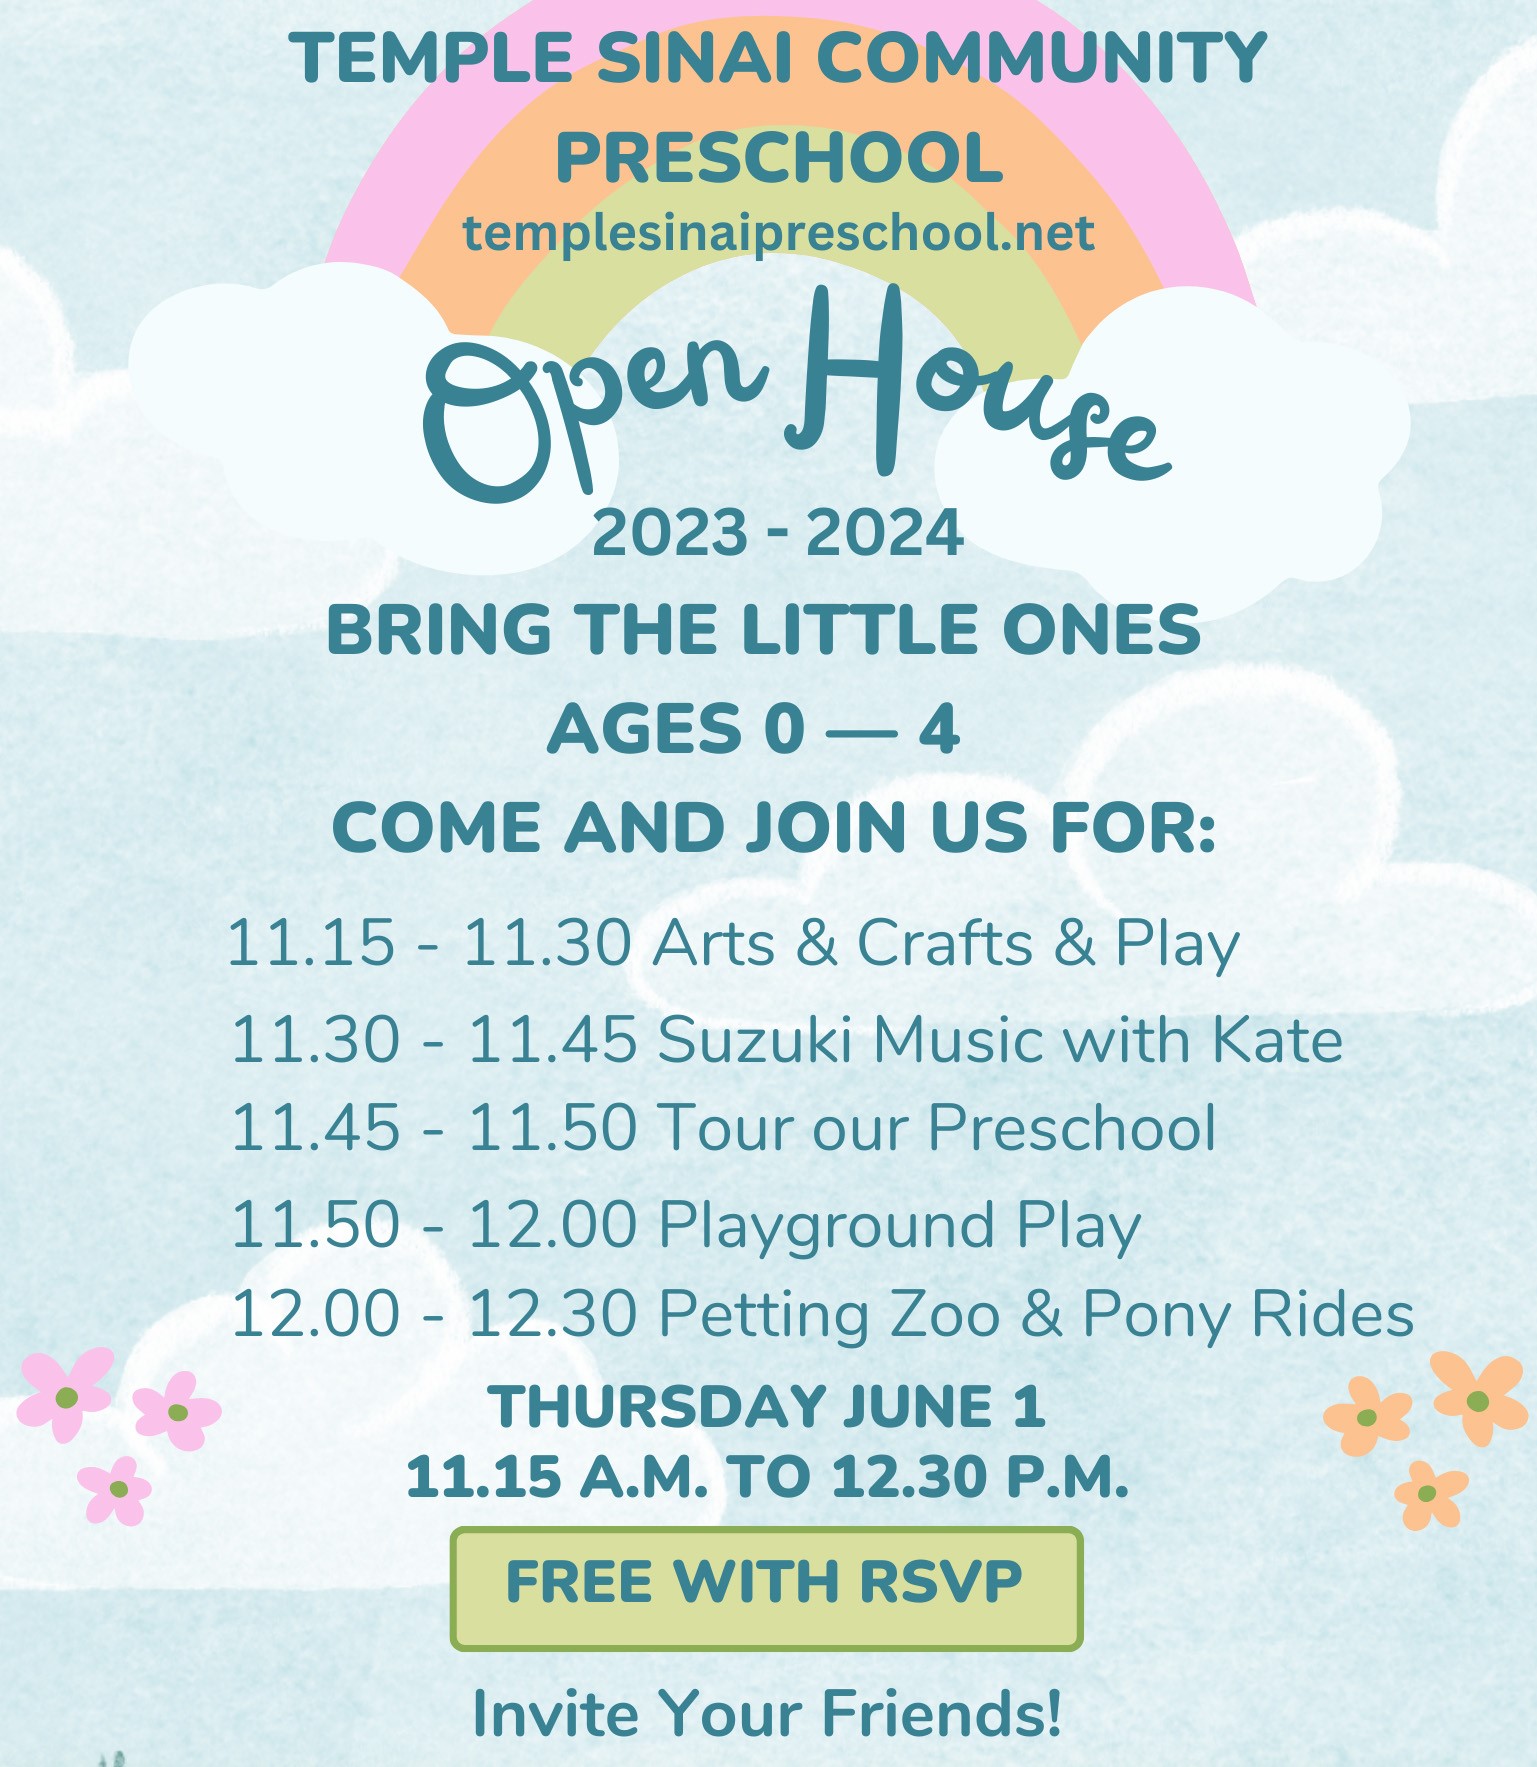 Community Preschool Open House 2023